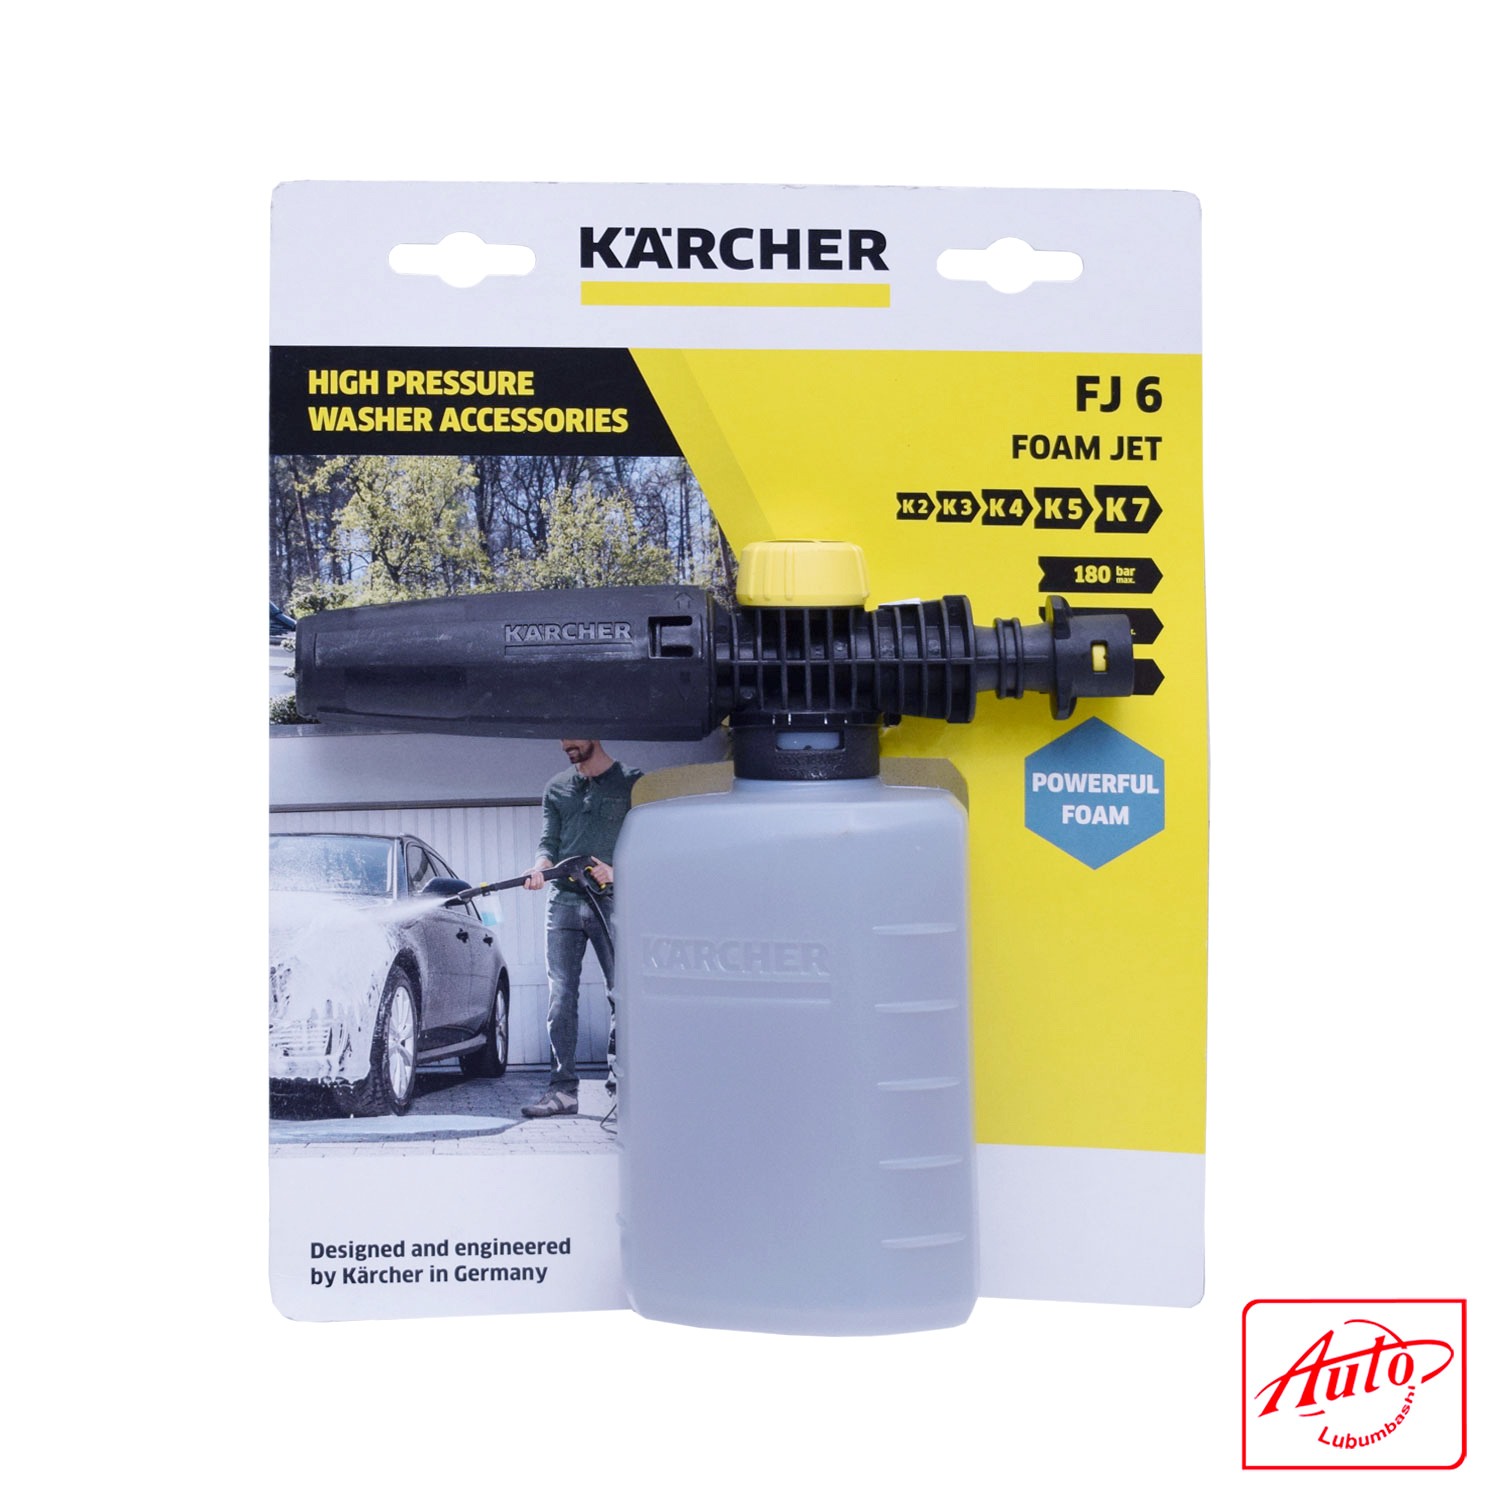 CANON A MOUSSE + Adaptateur Karcher K Series + Reservoir 1 litre